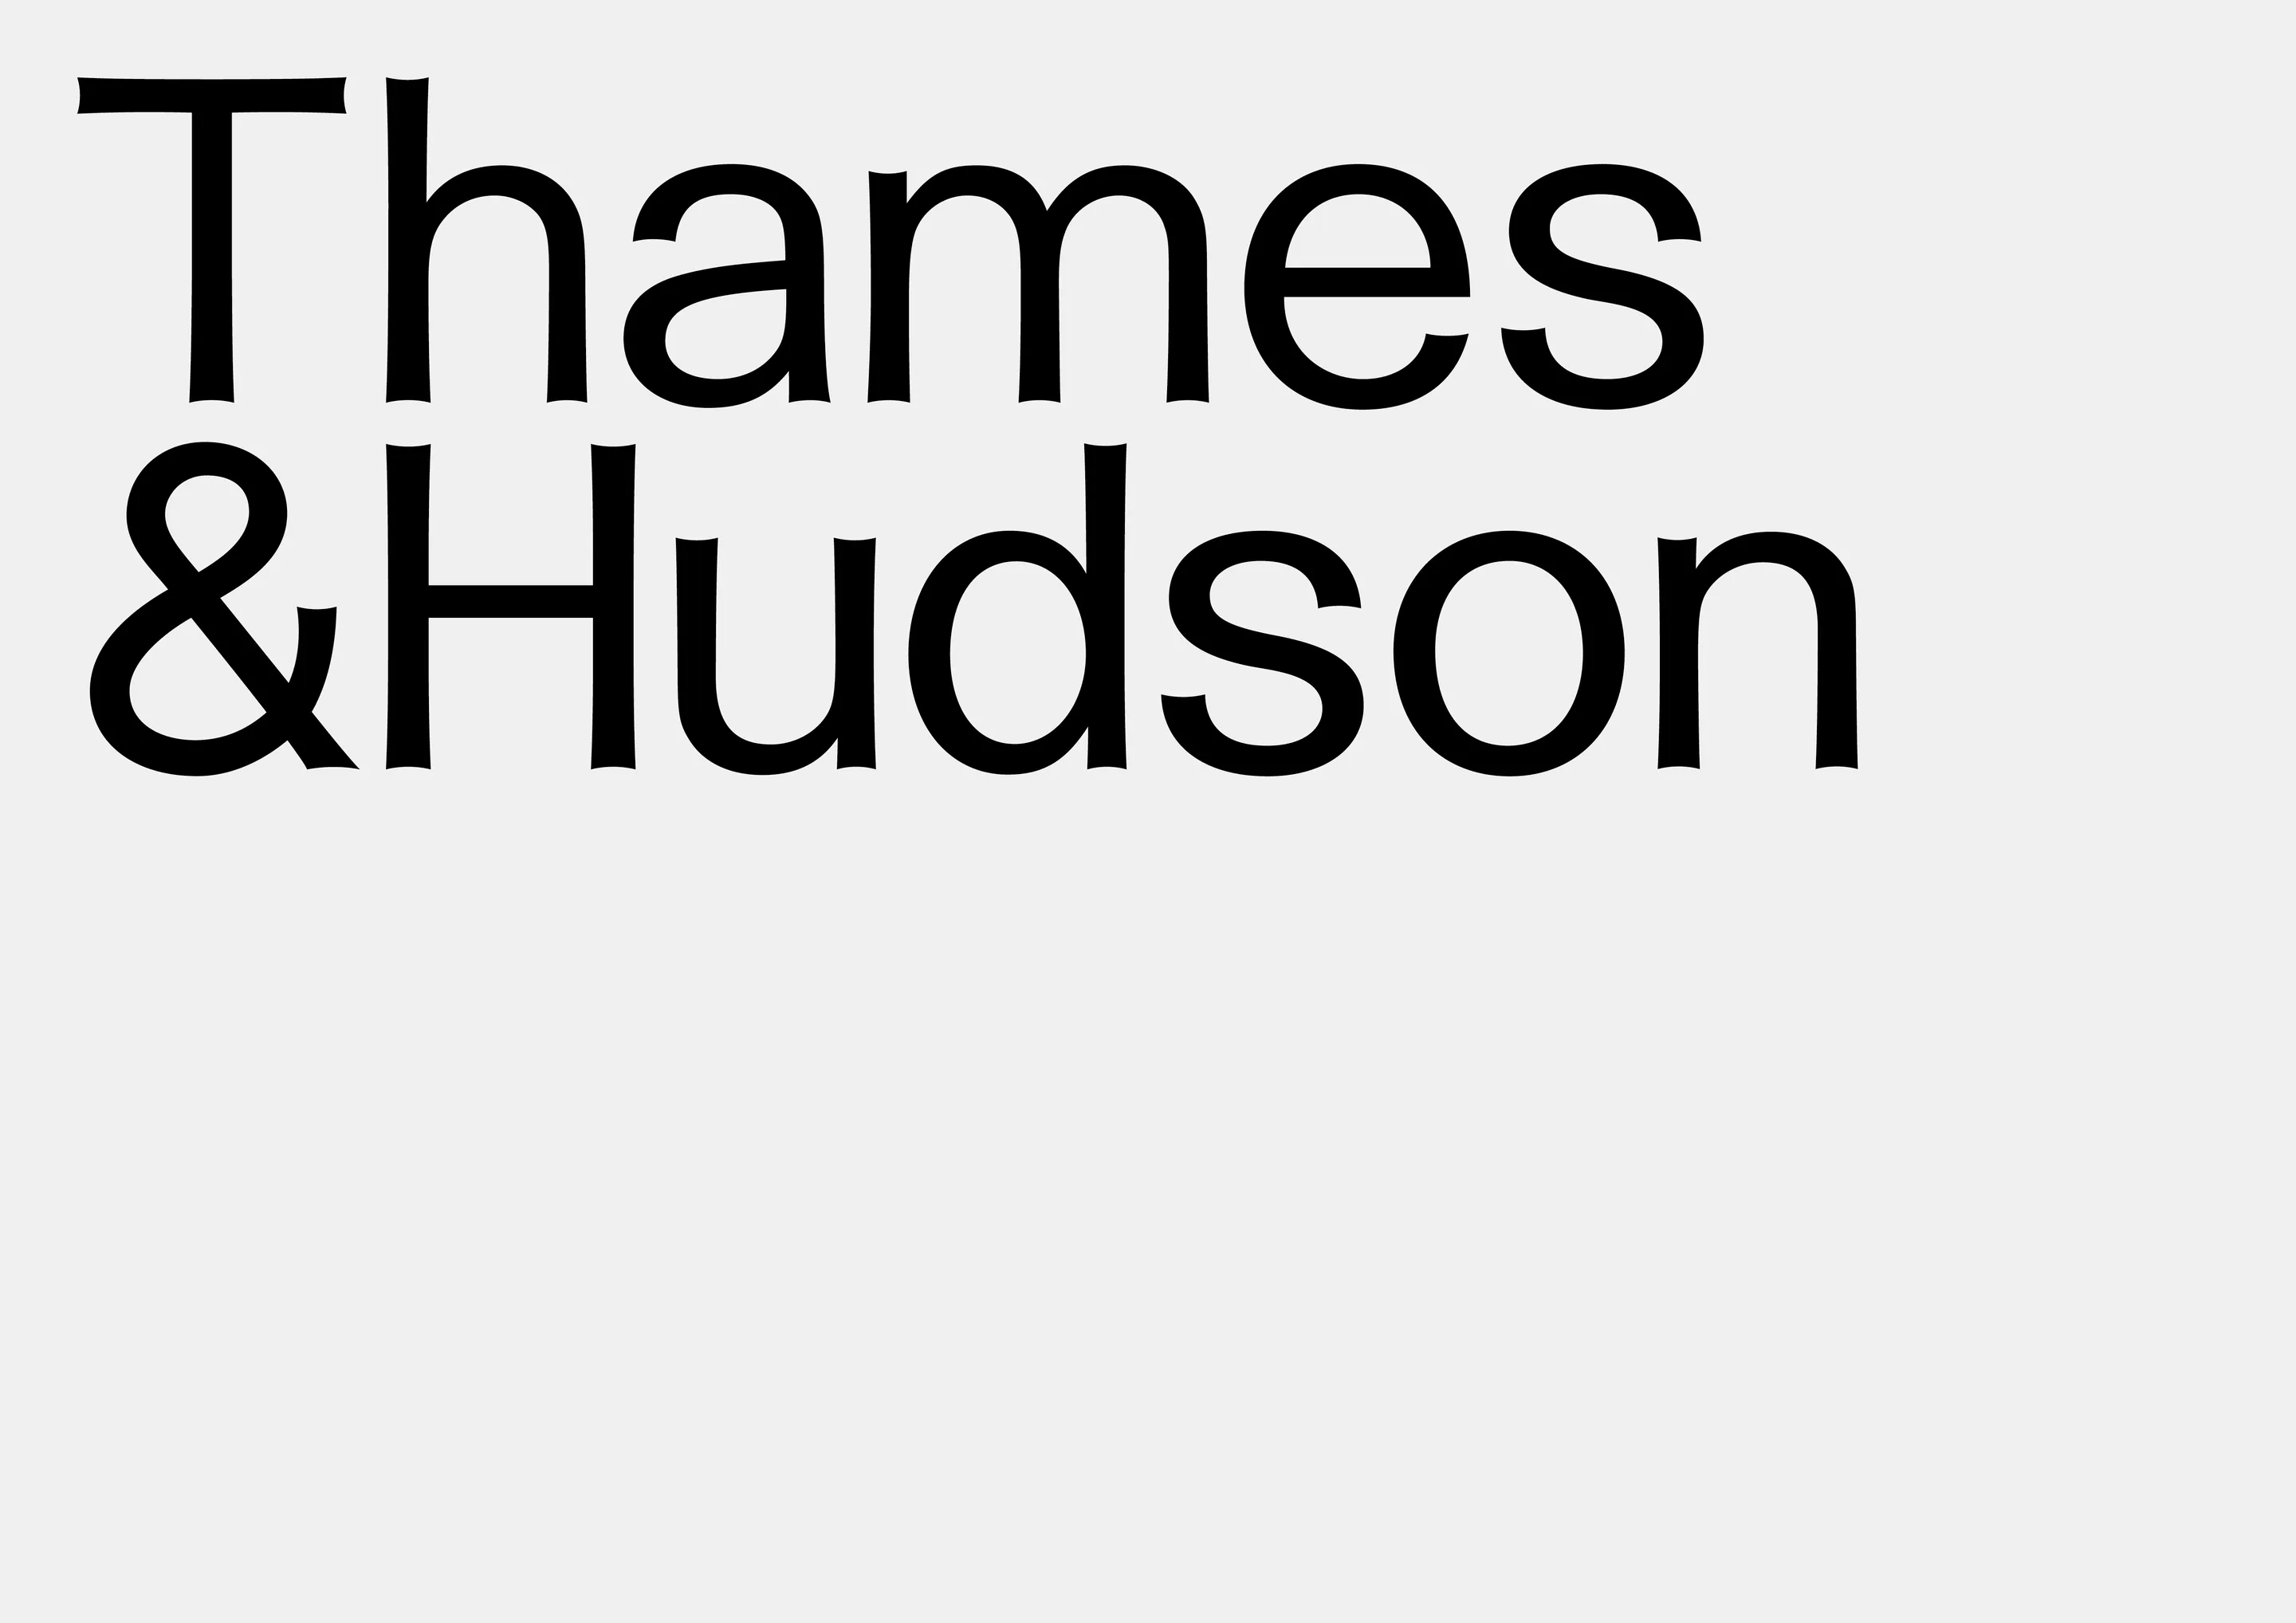 Exploring the subtle details in Pentagram's Thames & Hudson rebrand